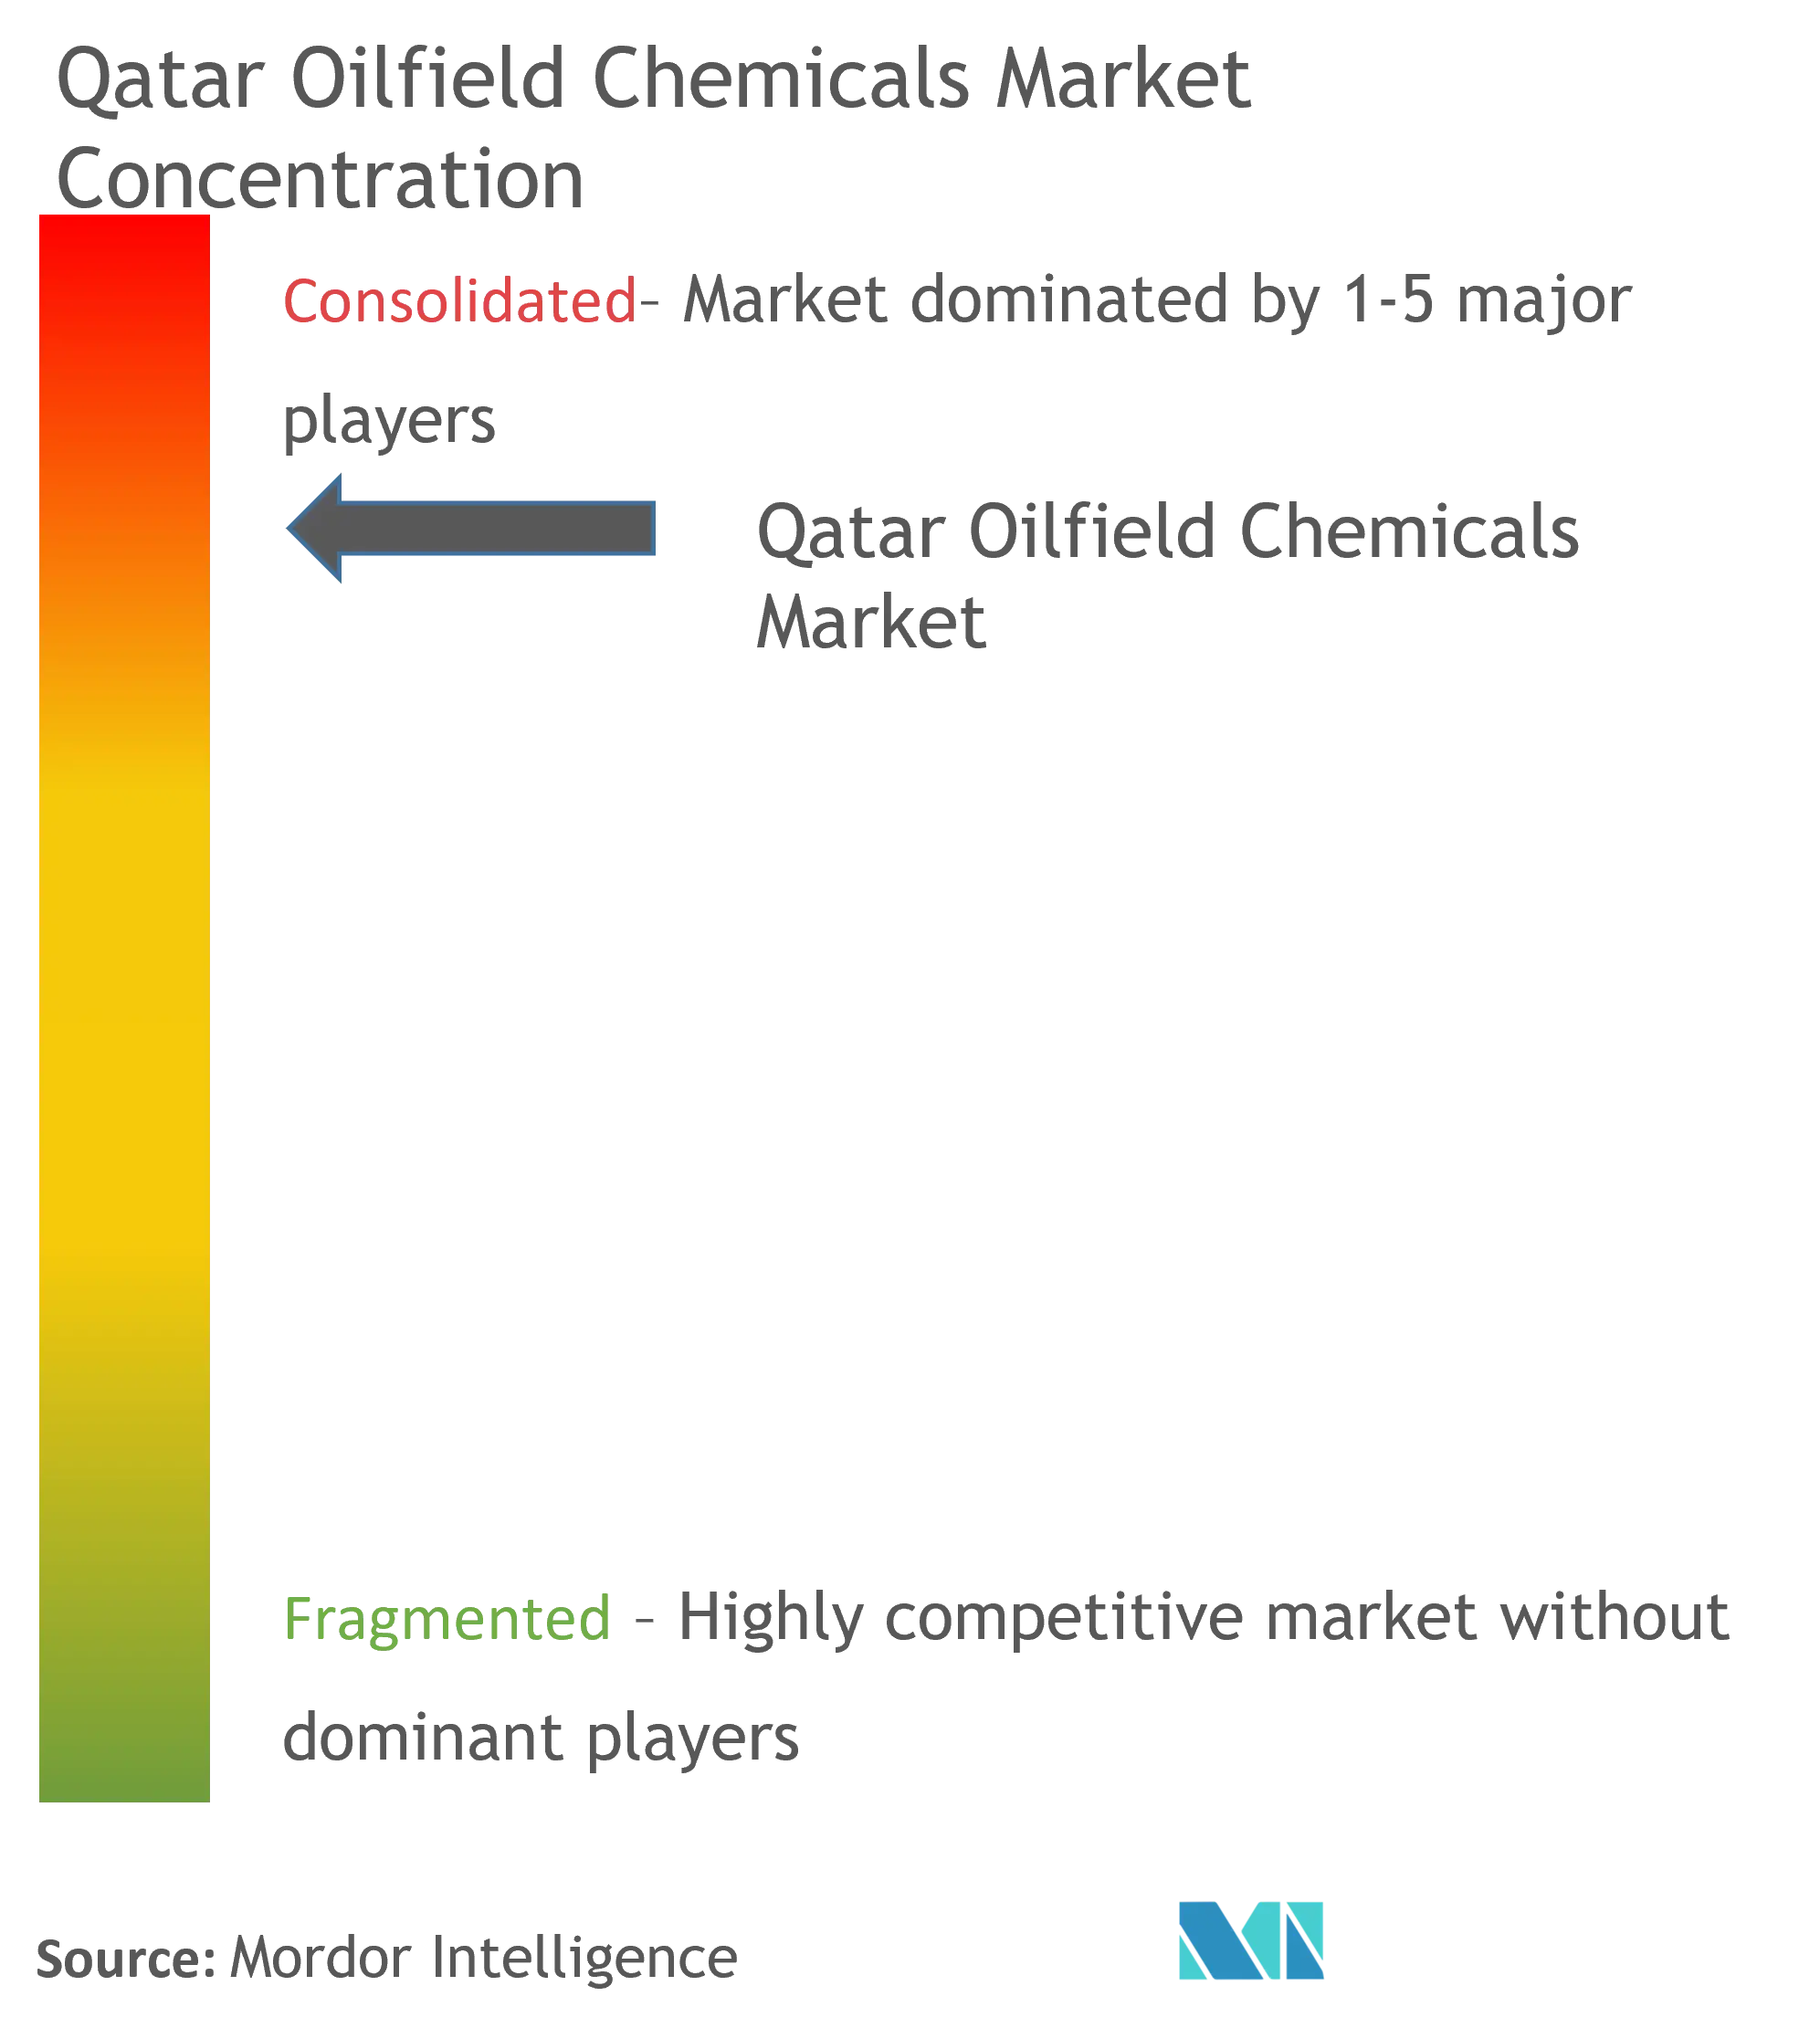 Concentración de mercado - Qatar Oilfield Chemicals Market.png